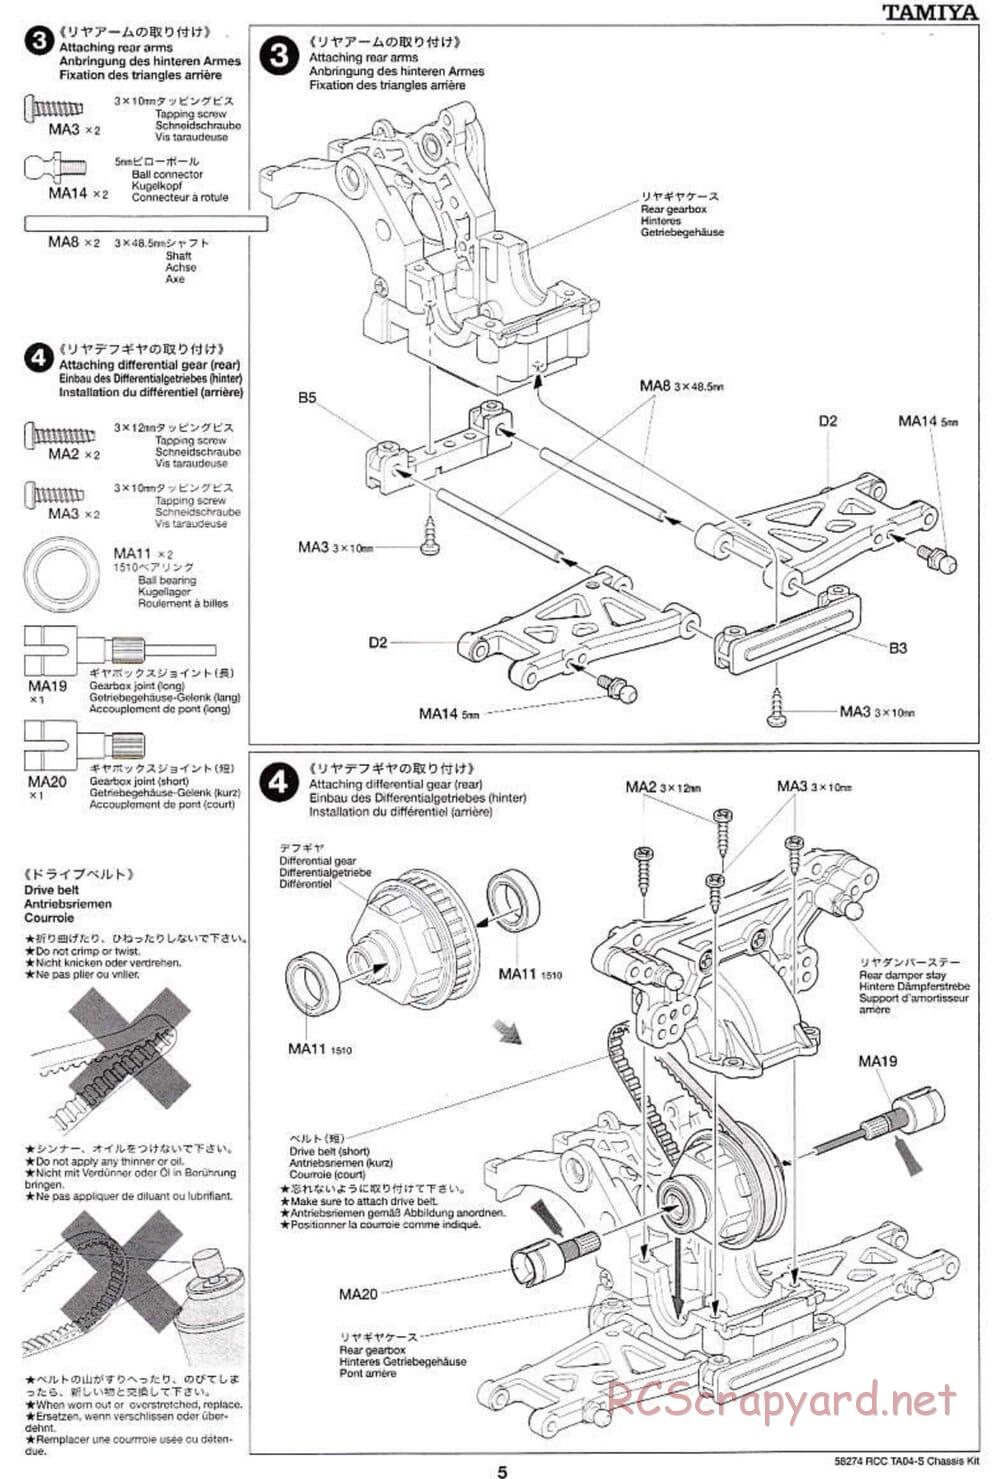 Tamiya - TA-04S Chassis - Manual - Page 5